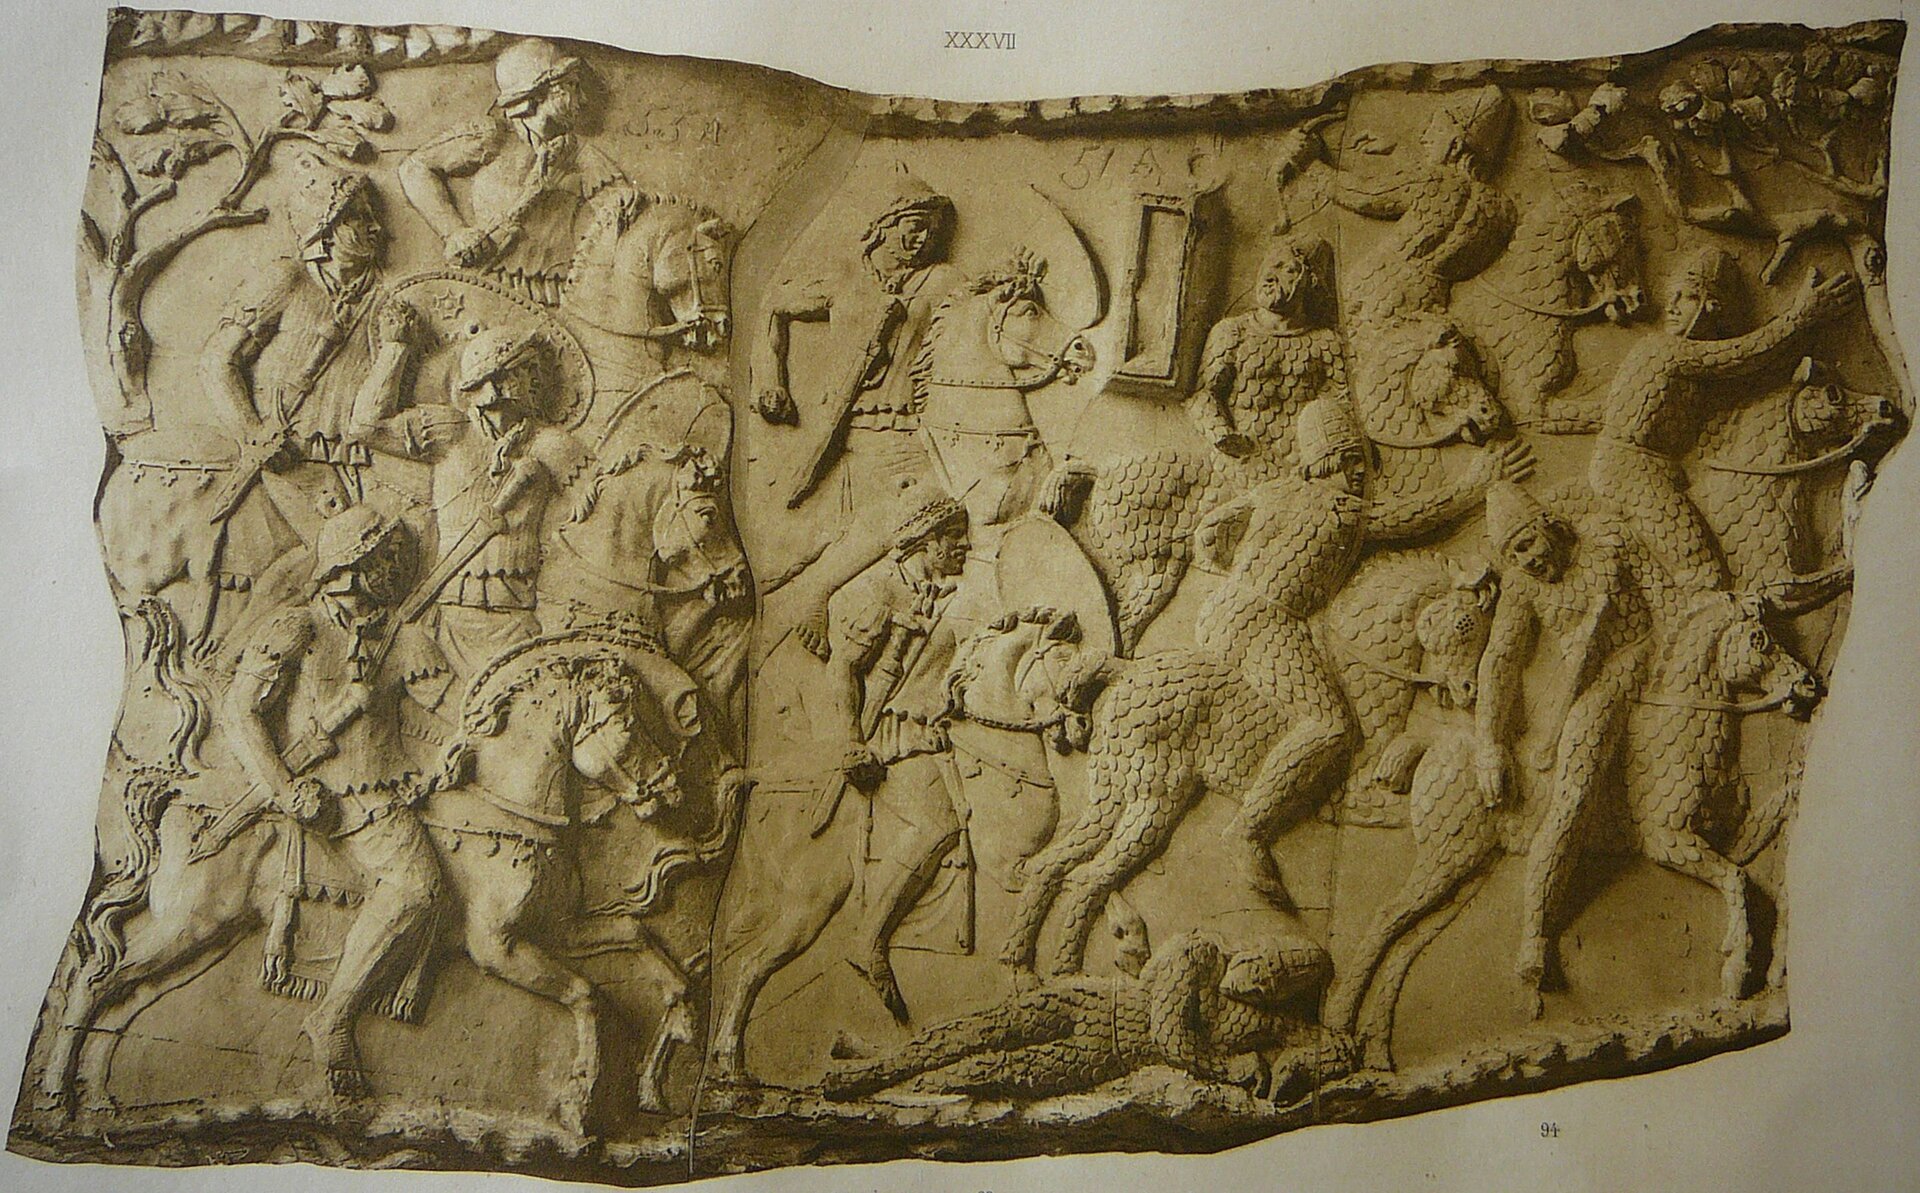 Ilustracja interaktywna przedstawia zdjęcie fragmentu Kolumny Trajana. Ukazuje fragment bitwy Rzymian z Dakami. Po lewej stronie na koniach ukazani są Rzymianie, którzy atakują wroga. Wojownicy na koniach ukazani są rzędowo. Prawa strona przedstawia uciekających Daków. Jedni odwracają się, inni spadają z koni. Na dole leży martwy żołnierz.